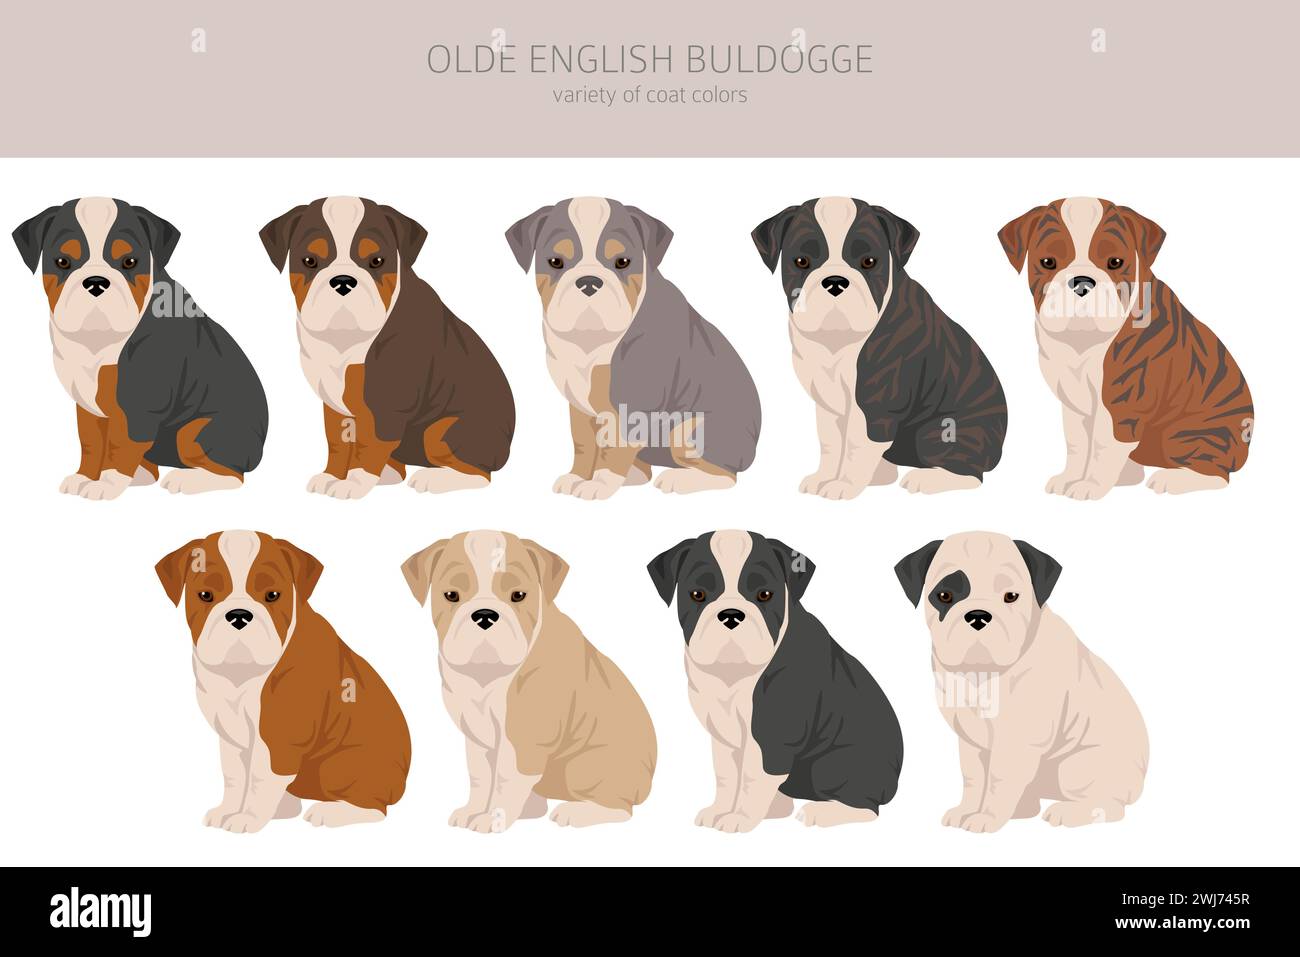 Olde English Bulldogge, Leavitt Bulldog cuccioli clipart. Pose diverse, set di colori per cappotti. Illustrazione vettoriale Illustrazione Vettoriale